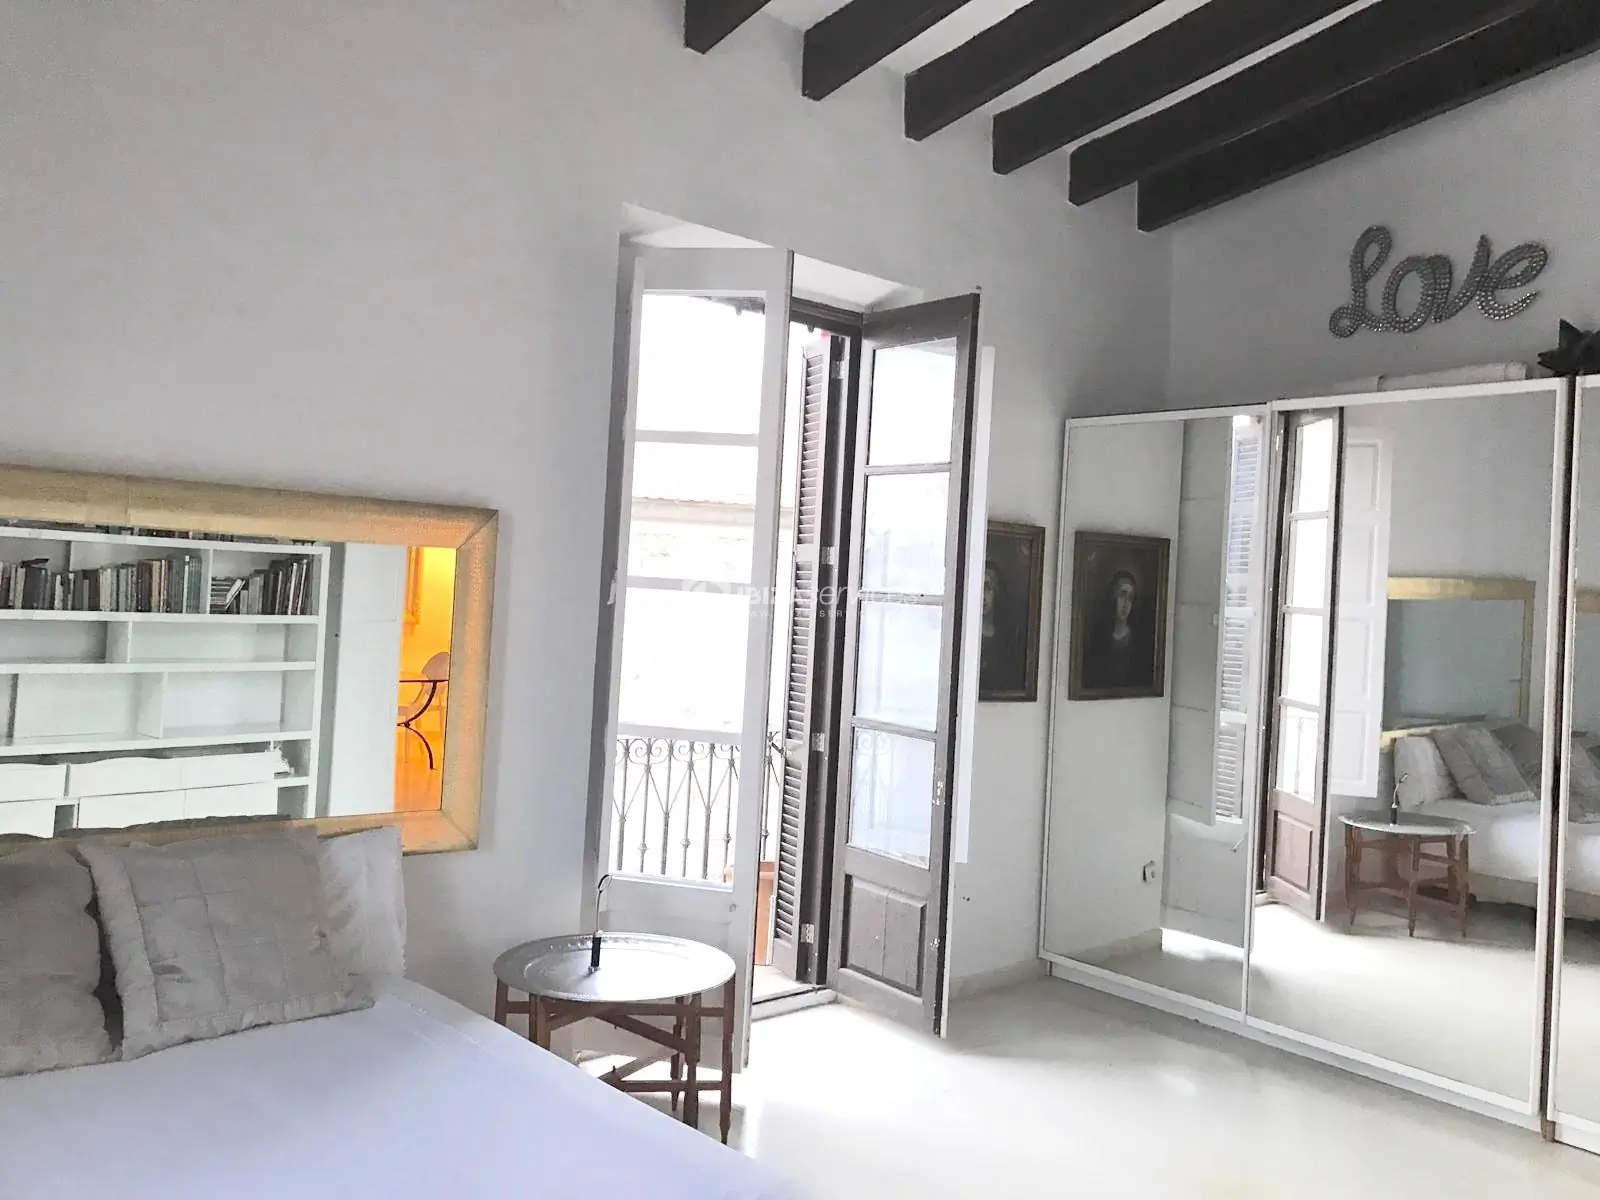 Maravillosa propiedad en el corazón de la ciudad histórica de Ibiza para comprar